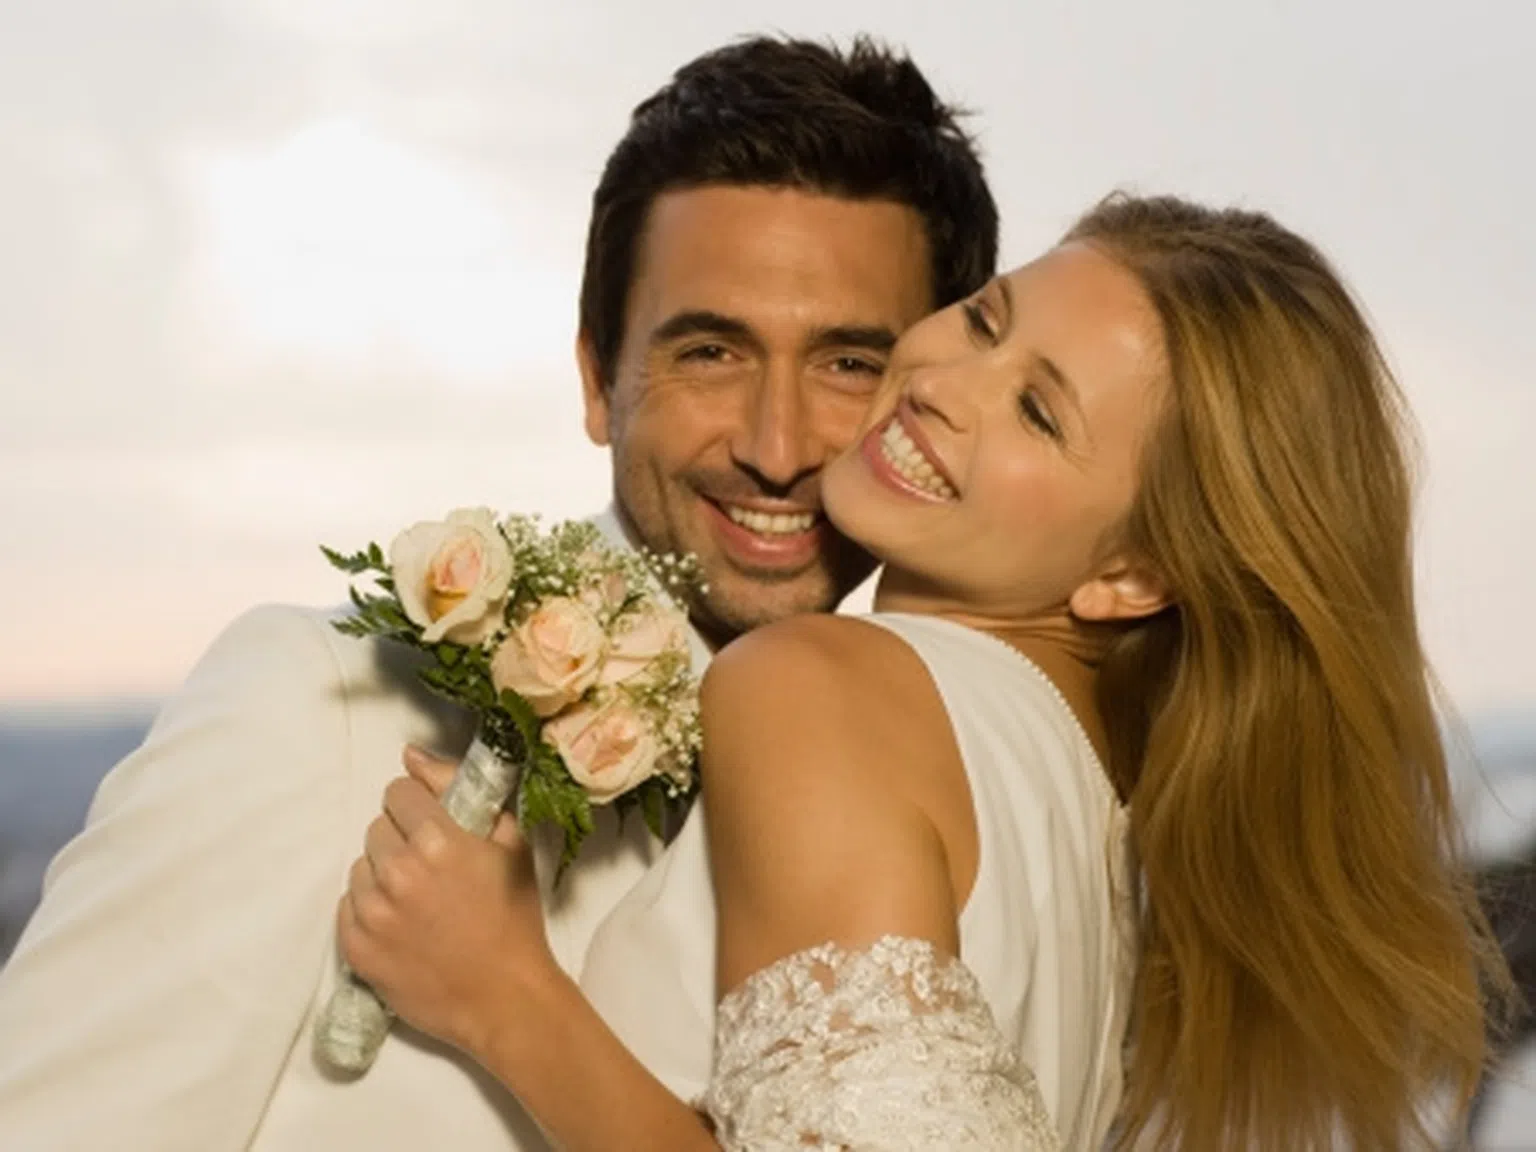 Тайната на щастливия брак се оказва еднообразието